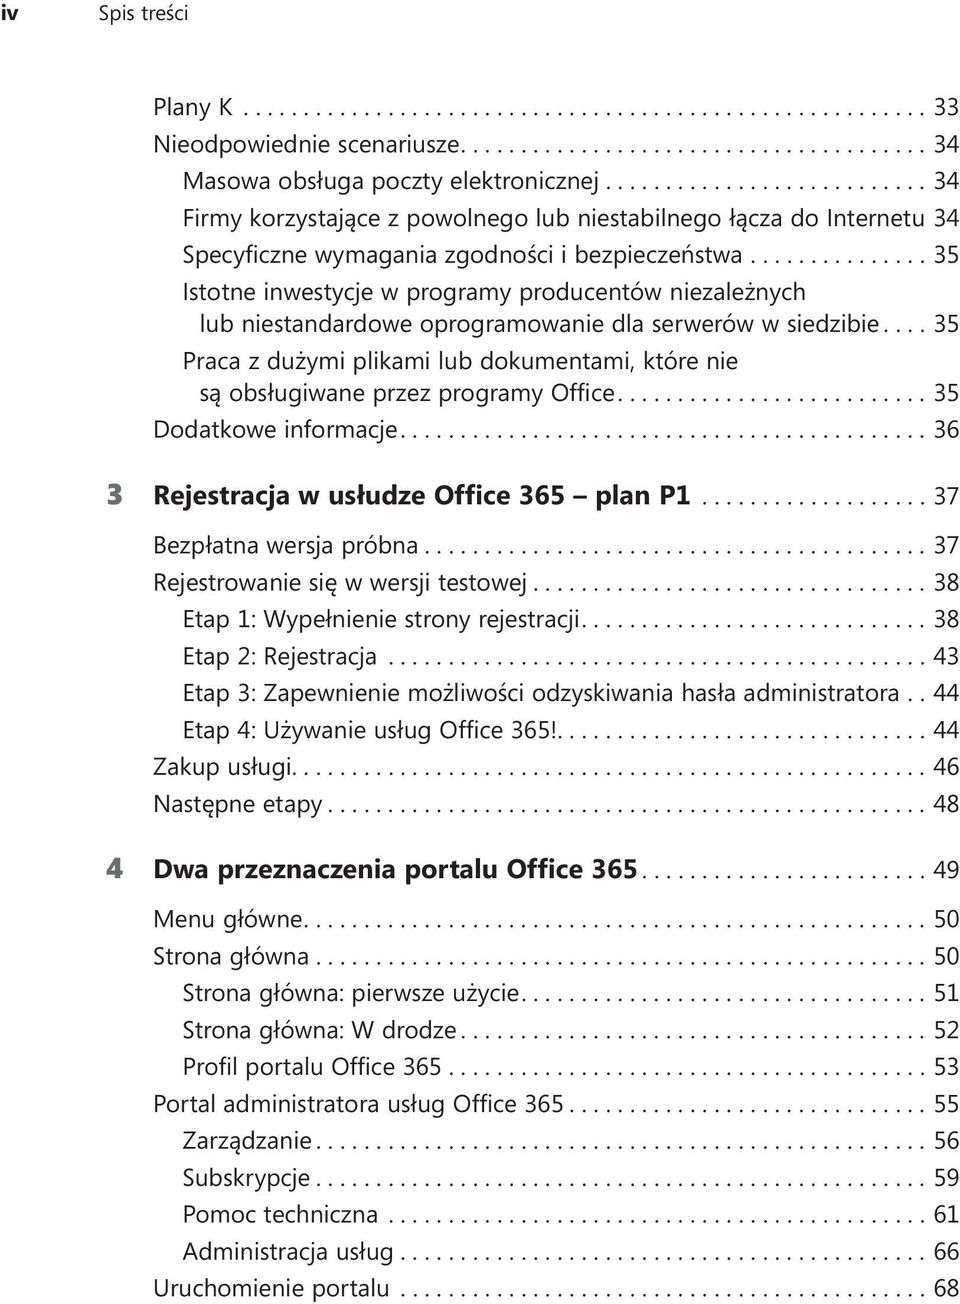 ...35 Praca z dużymi plikami lub dokumentami, które nie są obsługiwane przez programy Office....35 Dodatkowe informacje....36 3 Rejestracja w usłudze Office 365 plan P1...37 Bezpłatna wersja próbna.